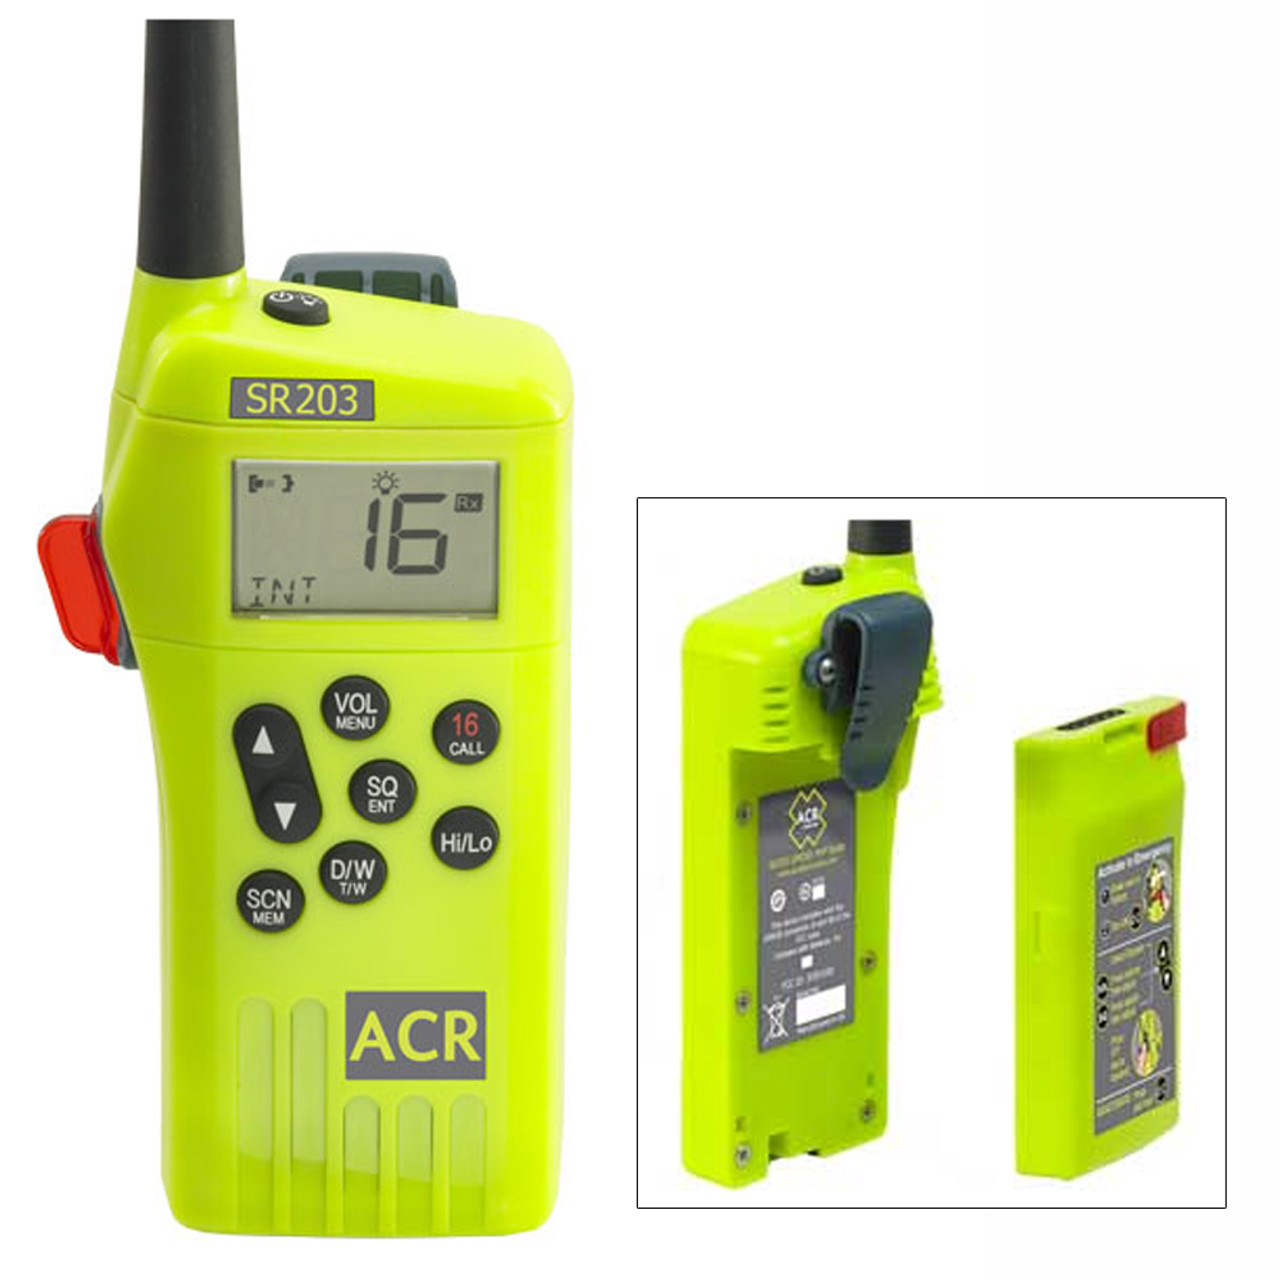 Radio de survie ACR SR203 GMDSS avec batterie au lithium remplaçable